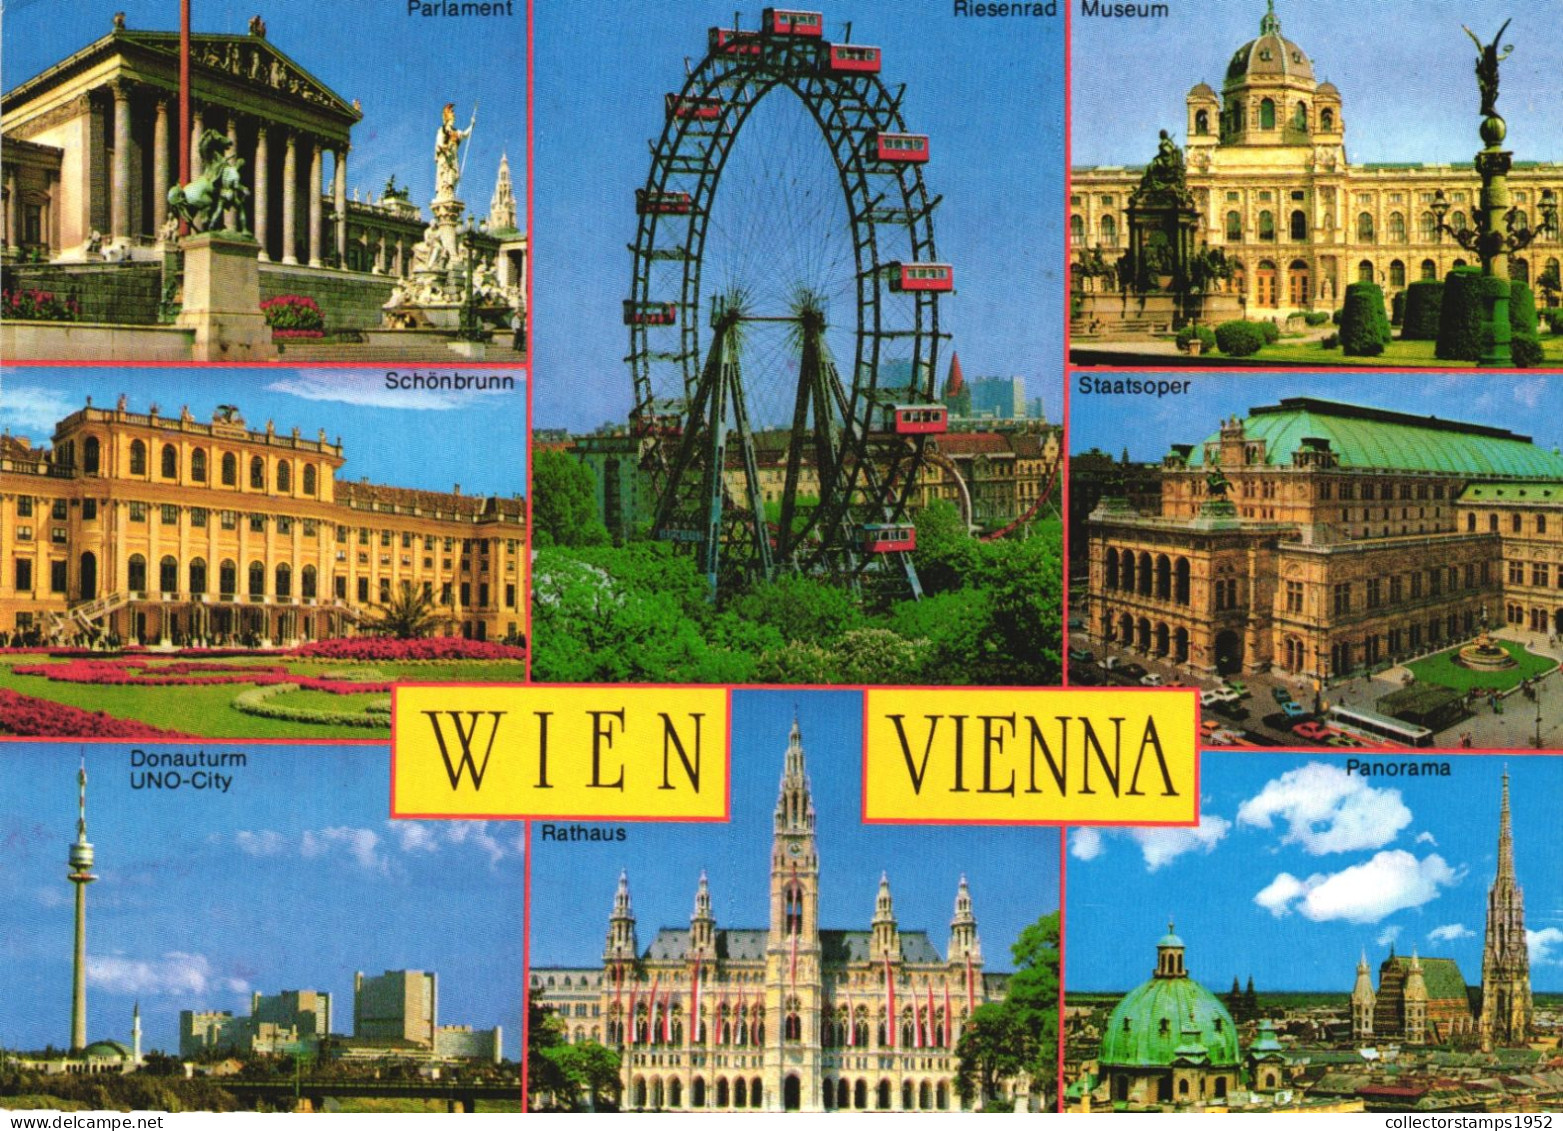 VIENNA, MULTIPLE VIEWS, ARCHITECTURE, STATUE, GIANT WHEEL, PARK, TOWER, AUSTRIA, POSTCARD - Wien Mitte